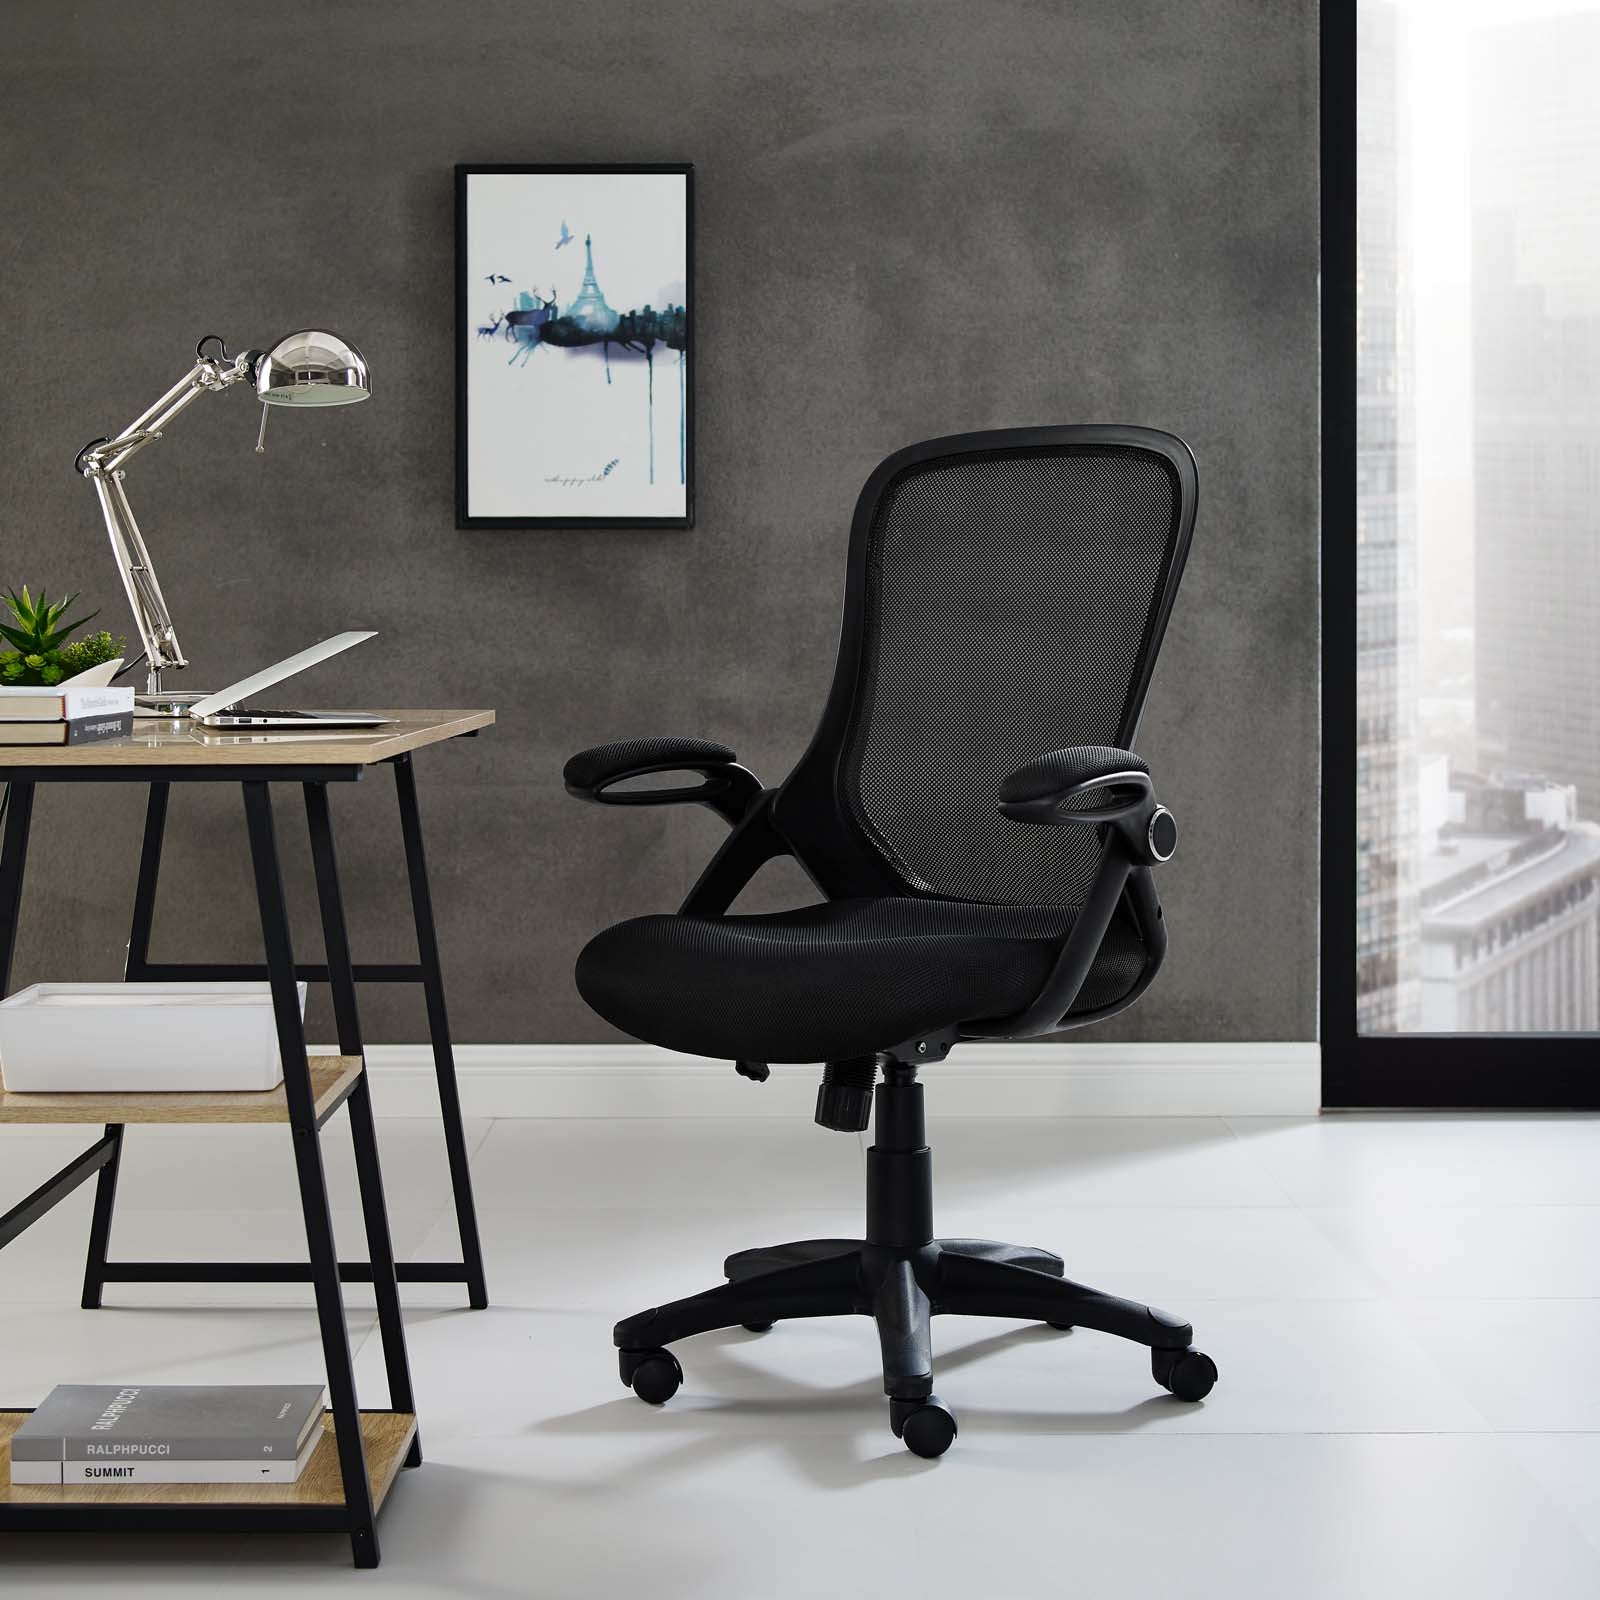 Assert Mesh Office Chair